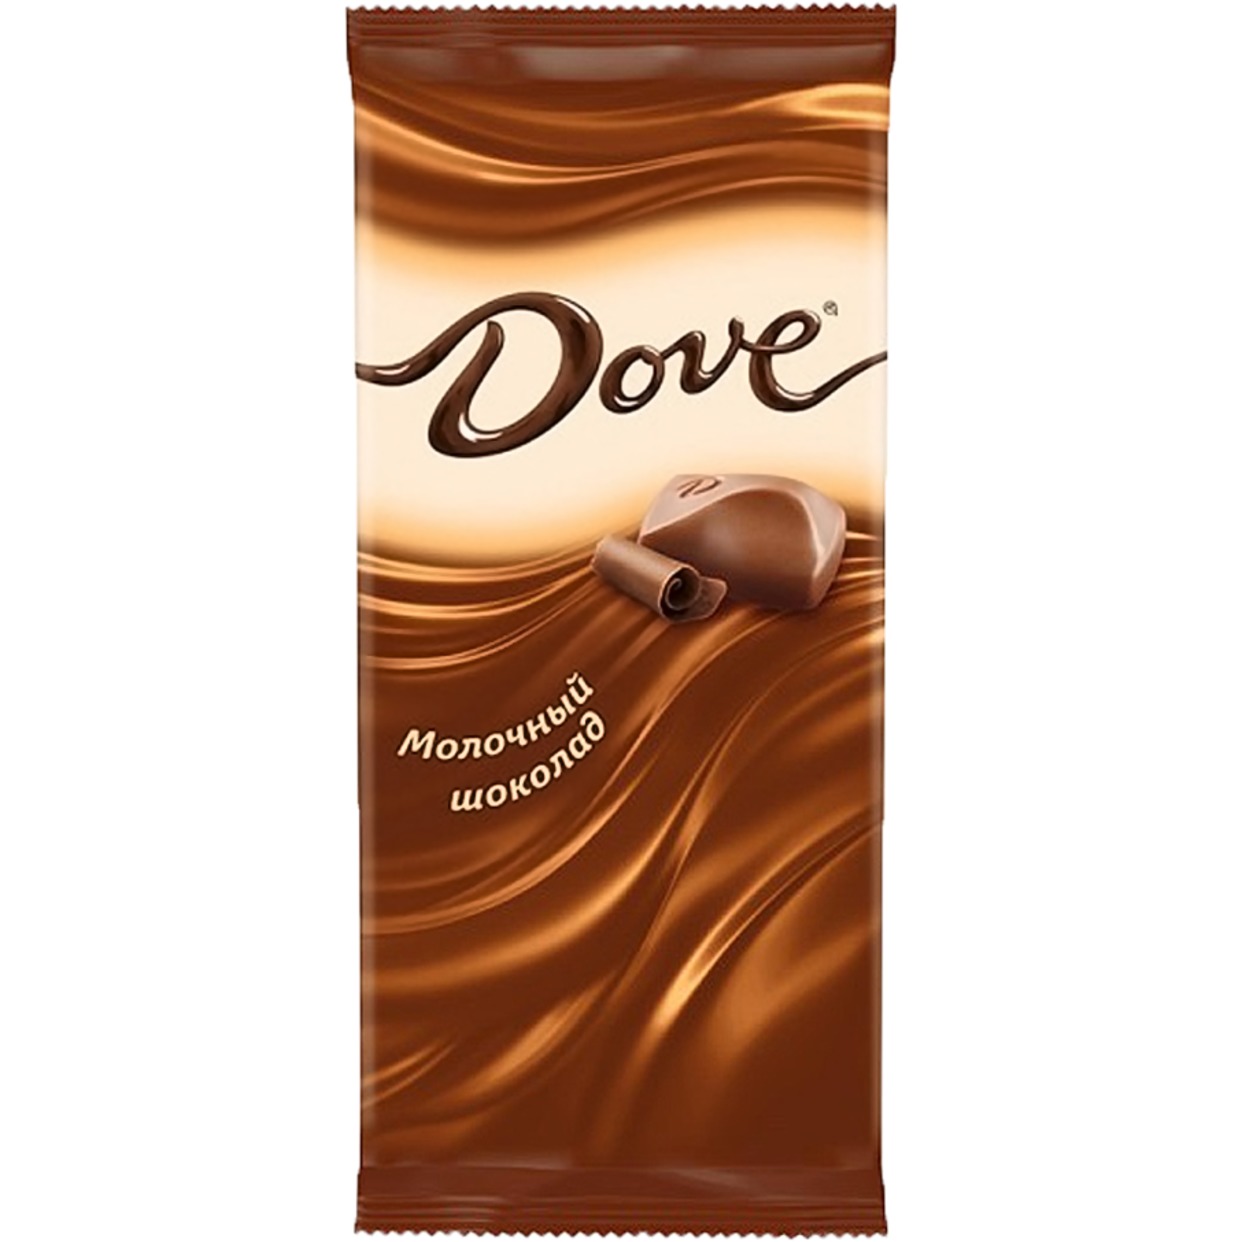 Шоколад Dove молочный 90г по акции в Пятерочке